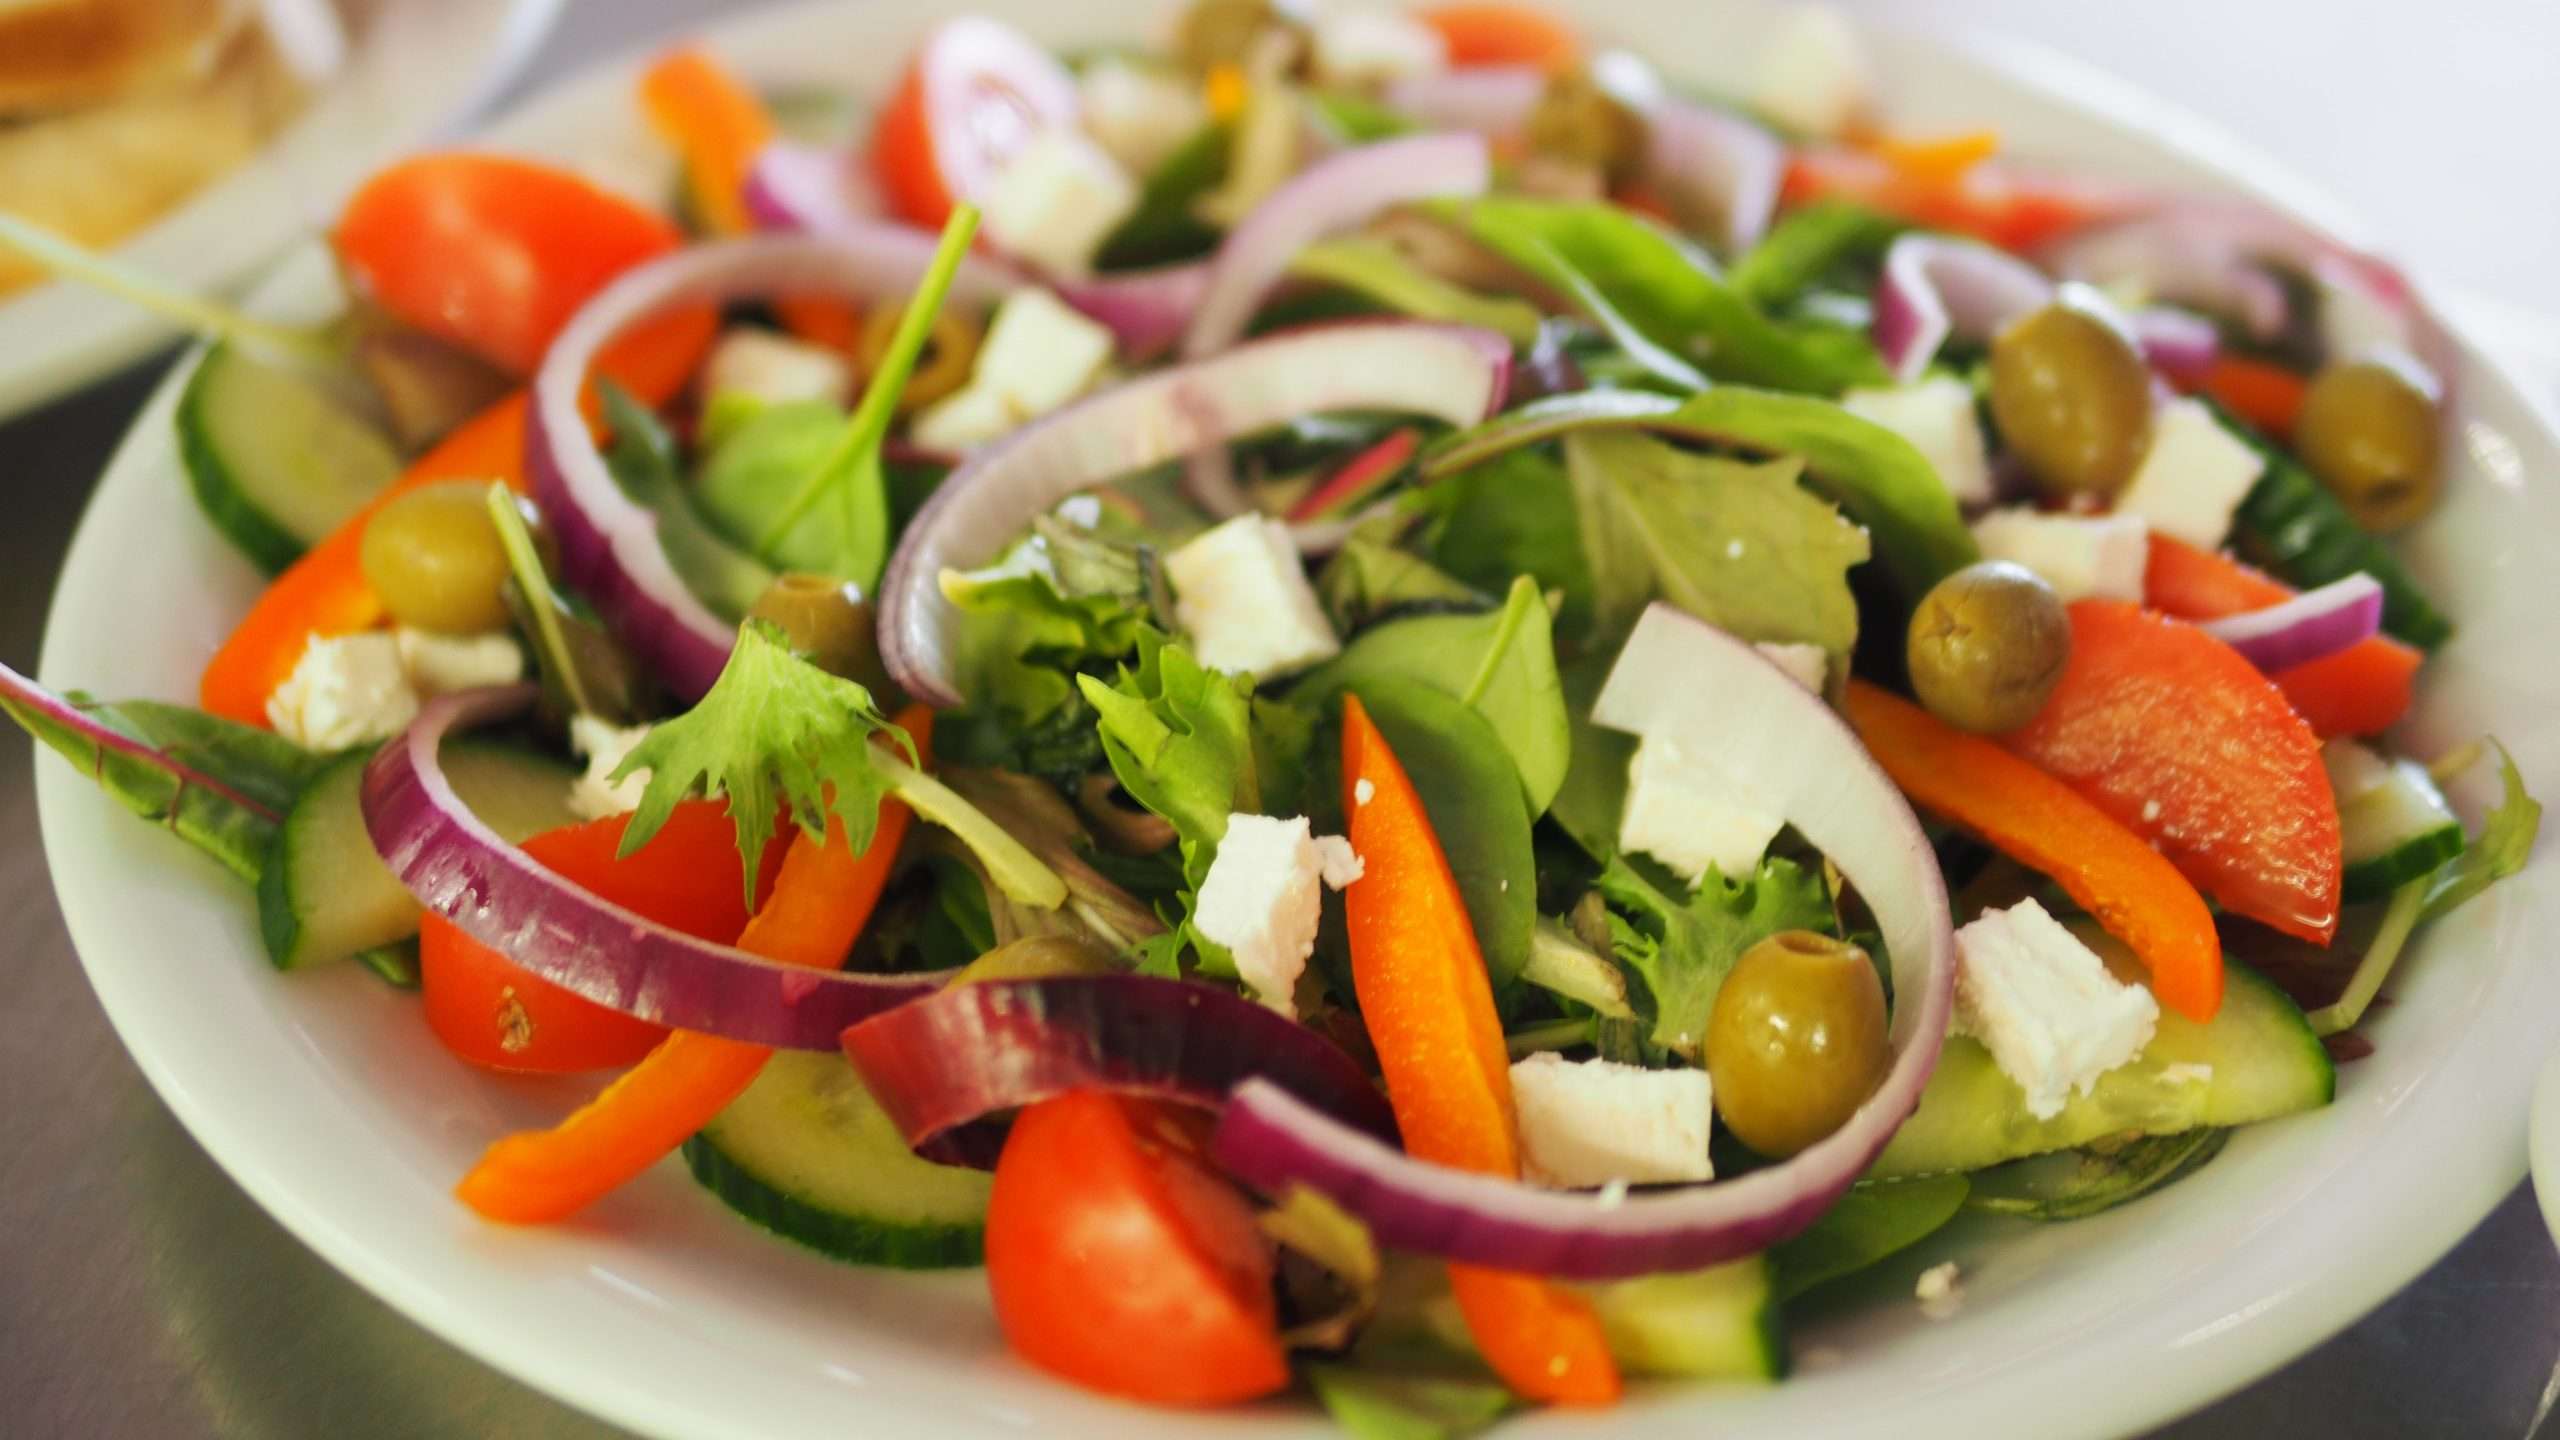 Vegetable Salad on Plate Â· Free Stock Photo